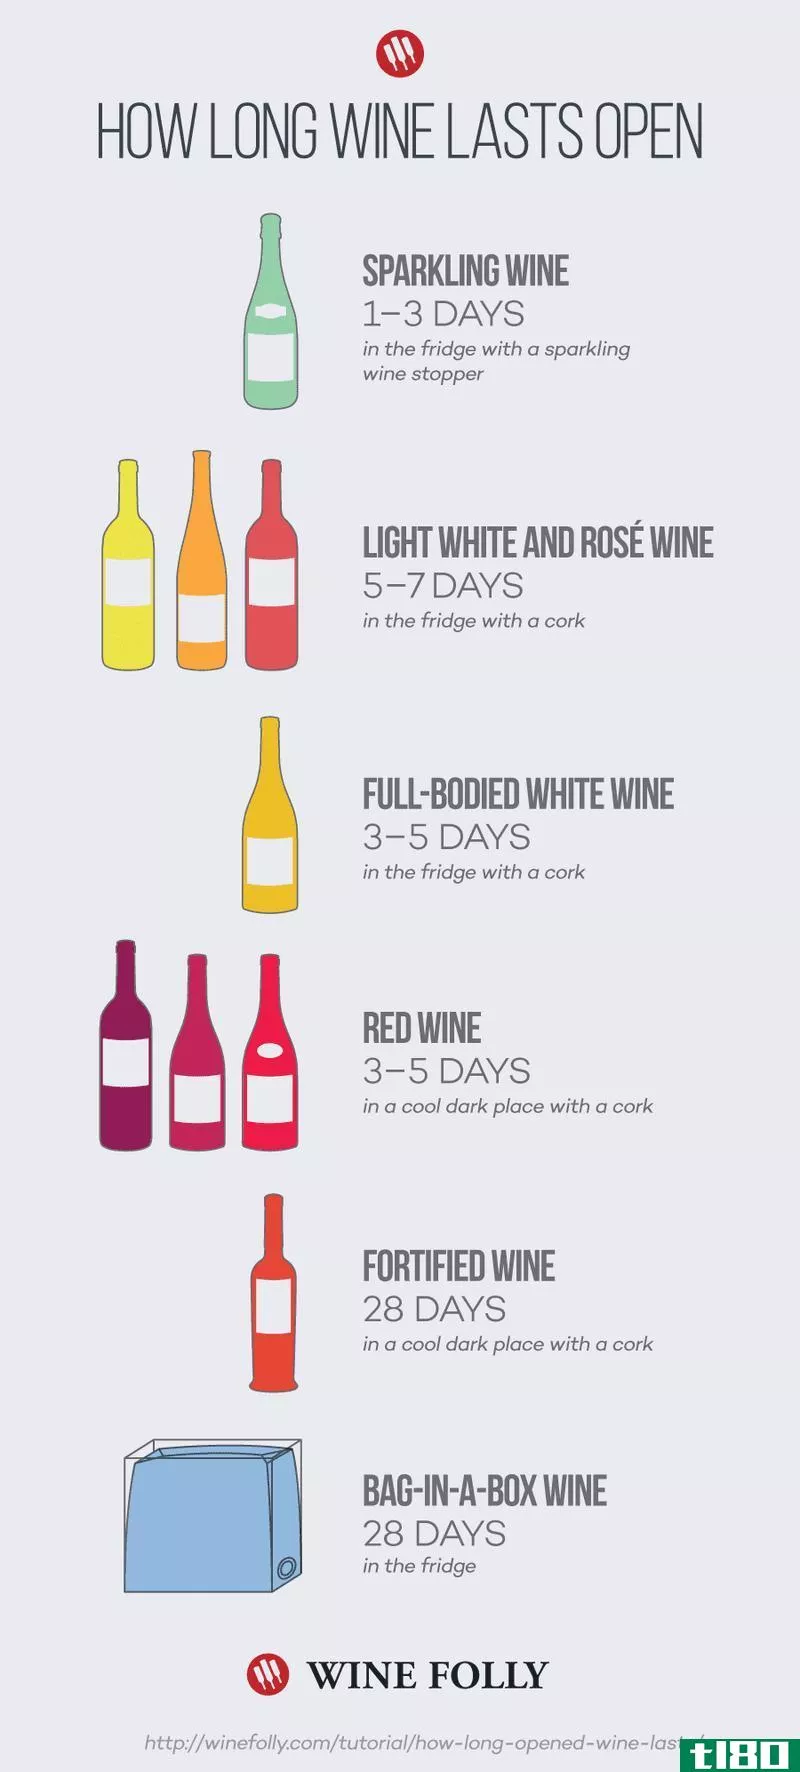 此信息图显示了不同葡萄酒开盘后持续多久